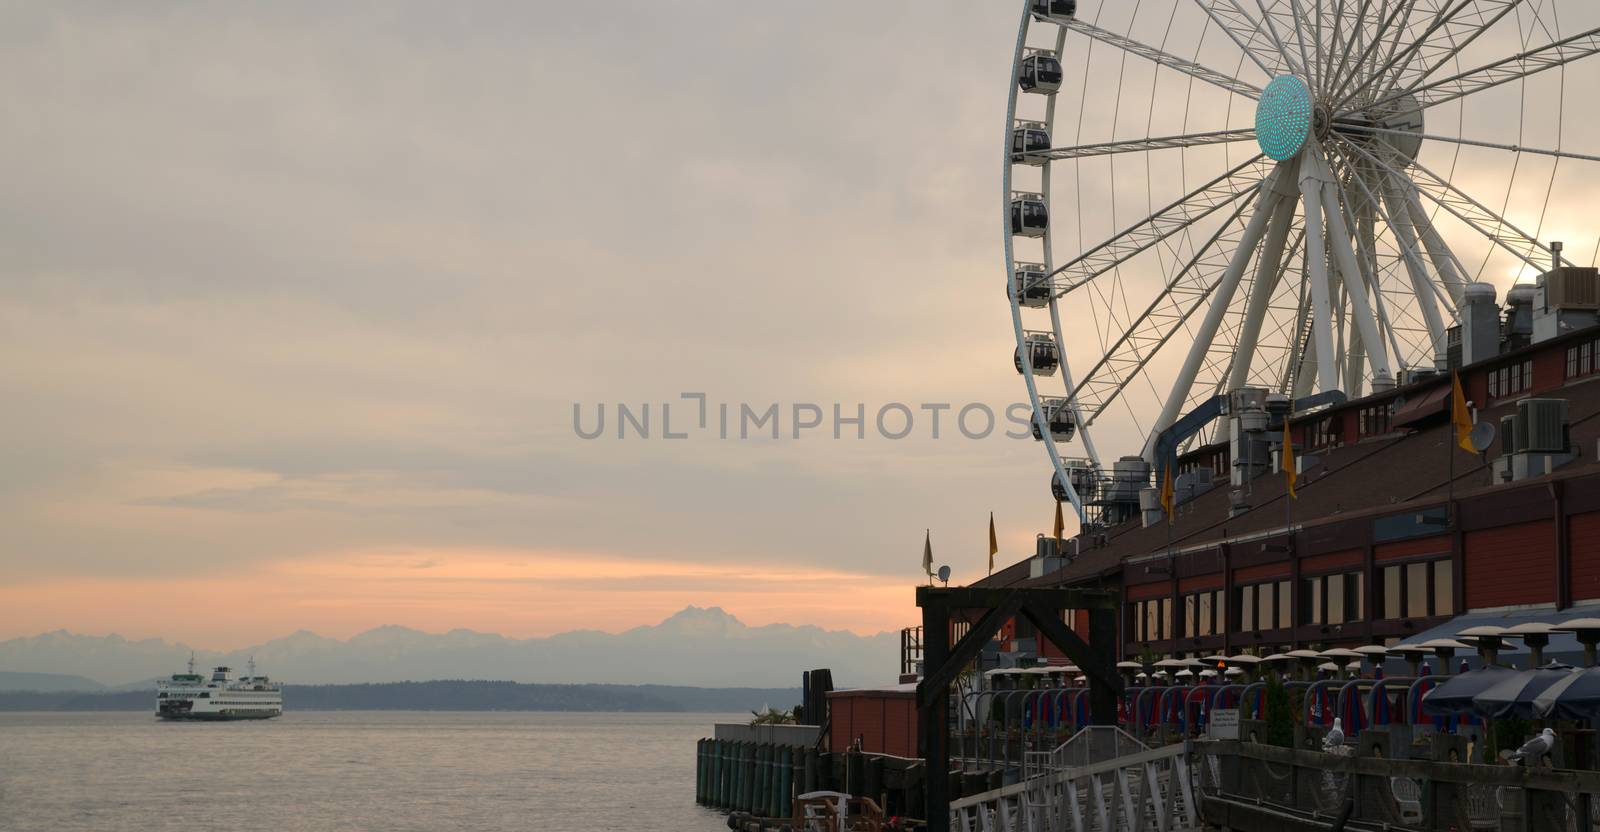 Elliott Bay Seattle Waterfront Pier Ferry Great Ferris Wheel by ChrisBoswell